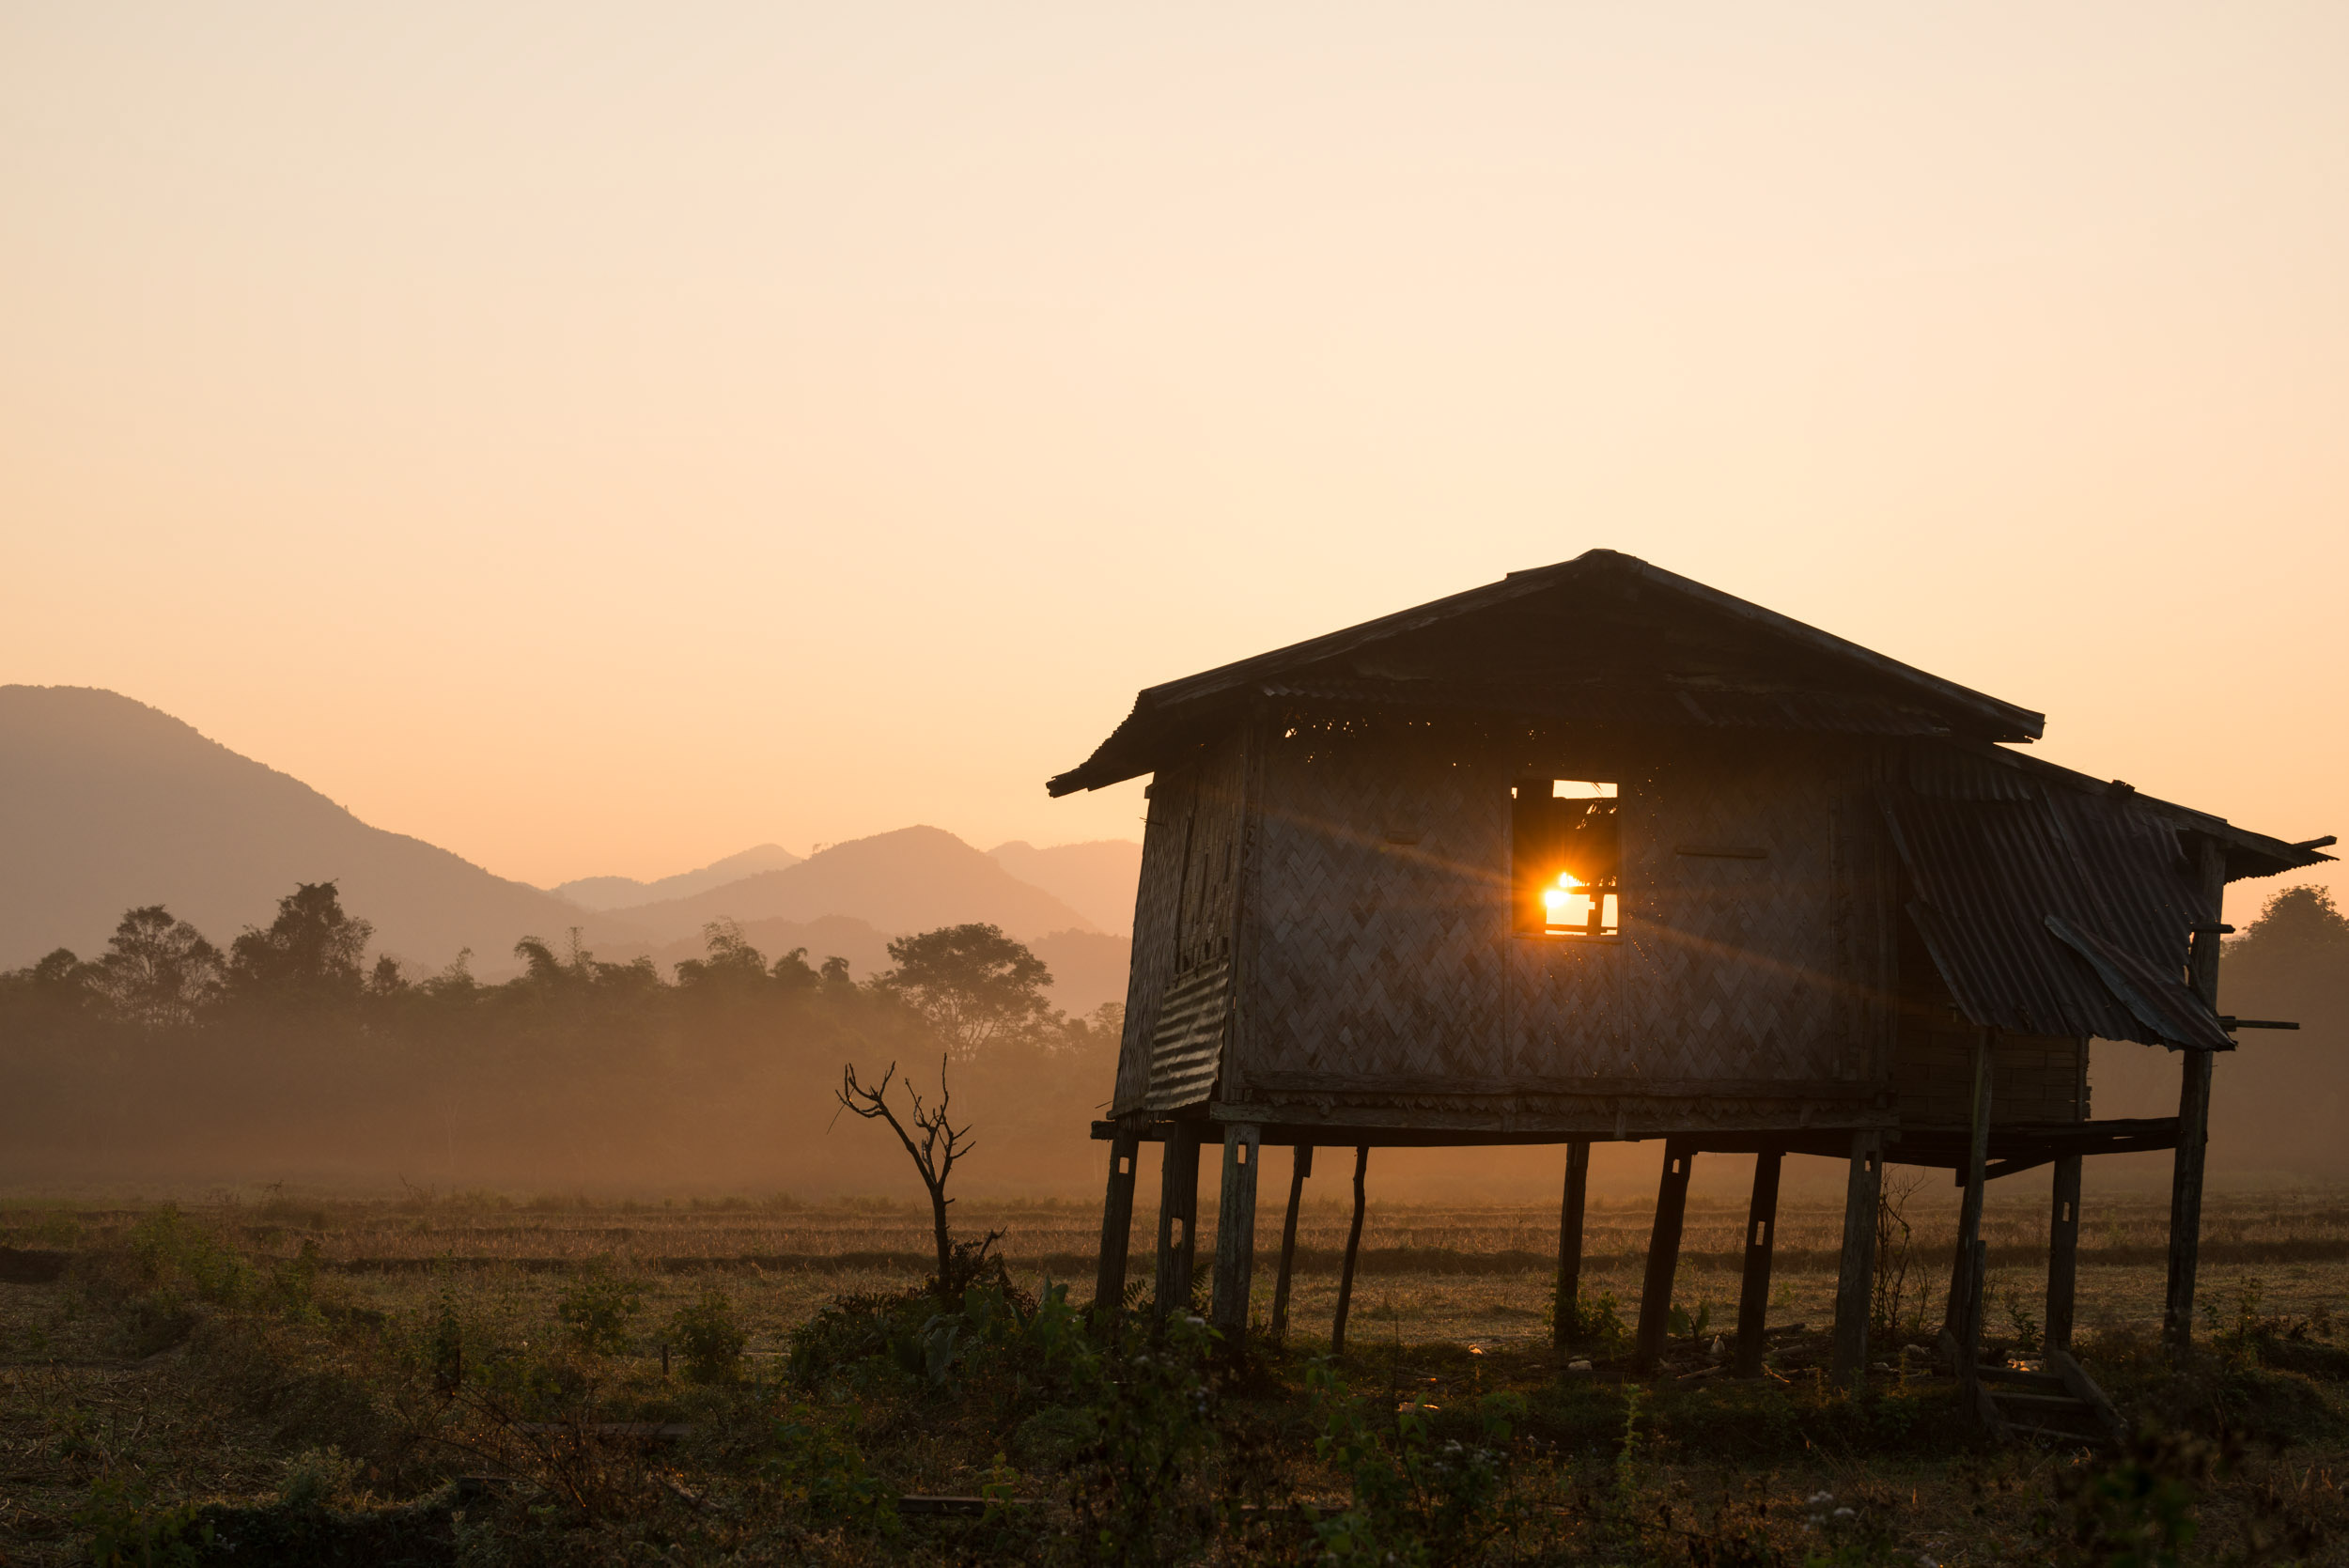 rural-sunrise-dawn-vang-vieng-laos-landscape-photography